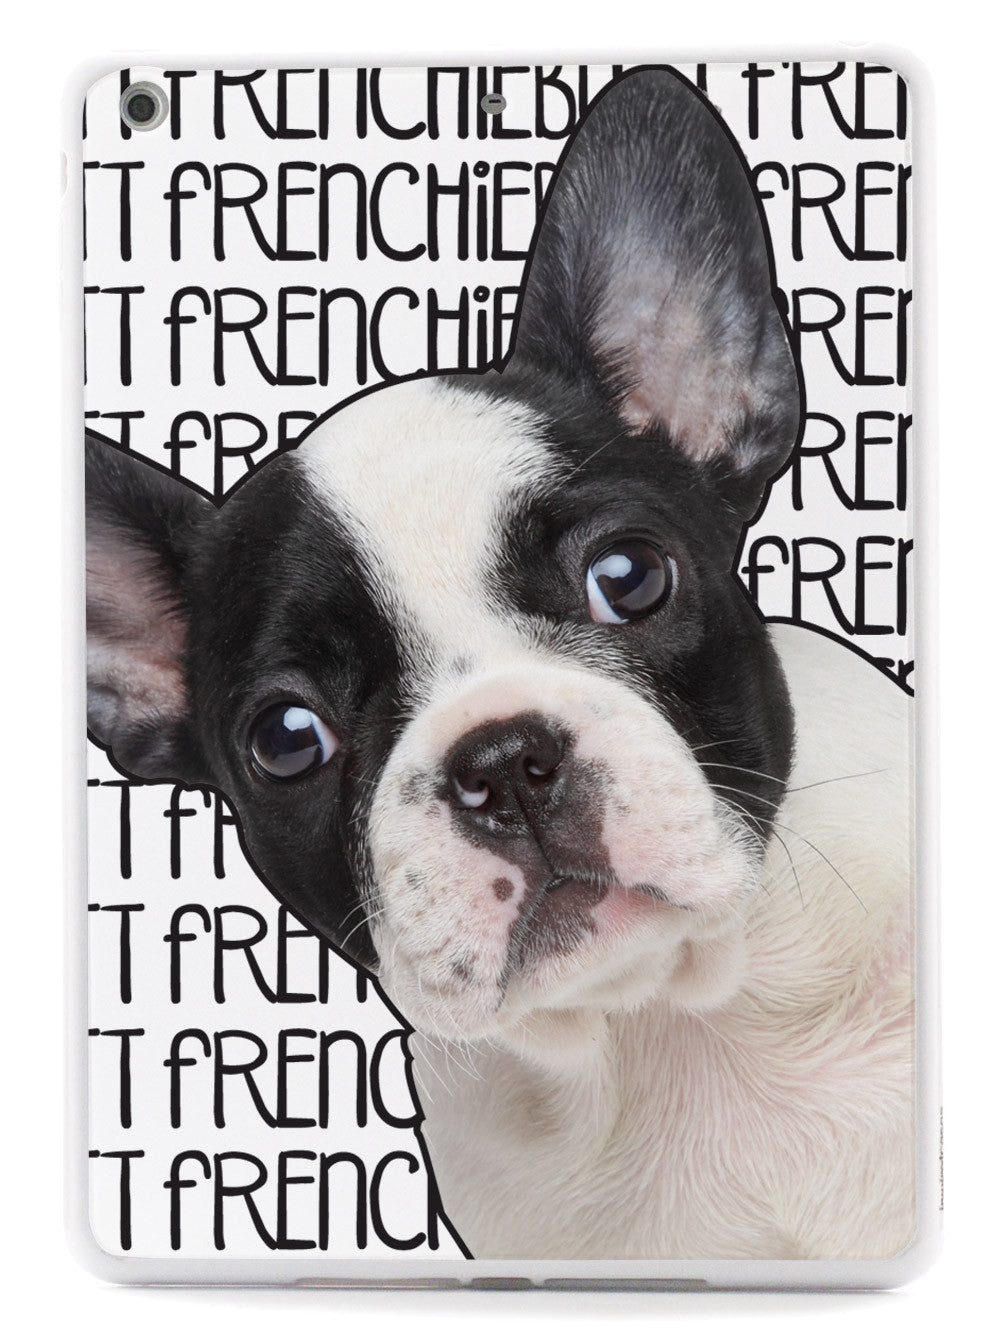 Frenchiebutt - French Bulldog Case